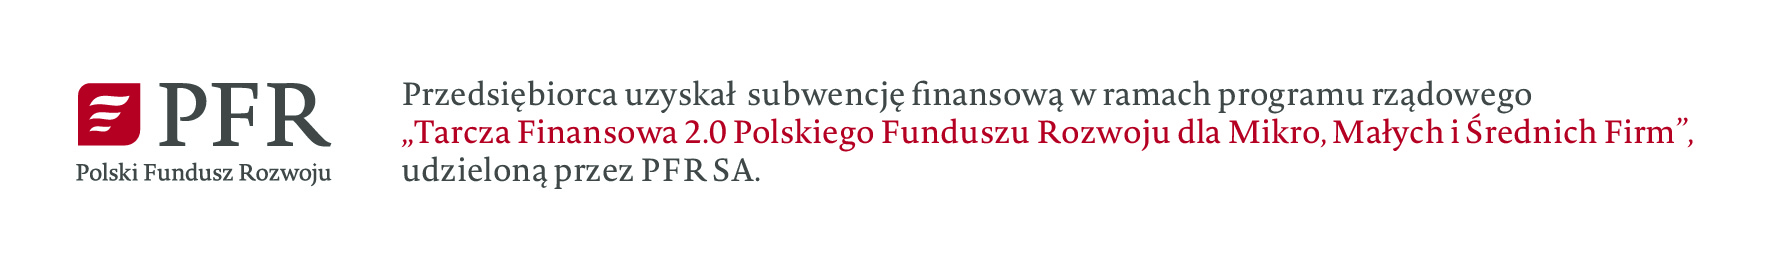 PFR Przedsiębiorca uzyskał subwencję finansową w ramach programu rządowego Tarcza Finansowa 2.0 Polskiego Funduszu Rozwoju dla Mikro, Małych i Średnich Firm